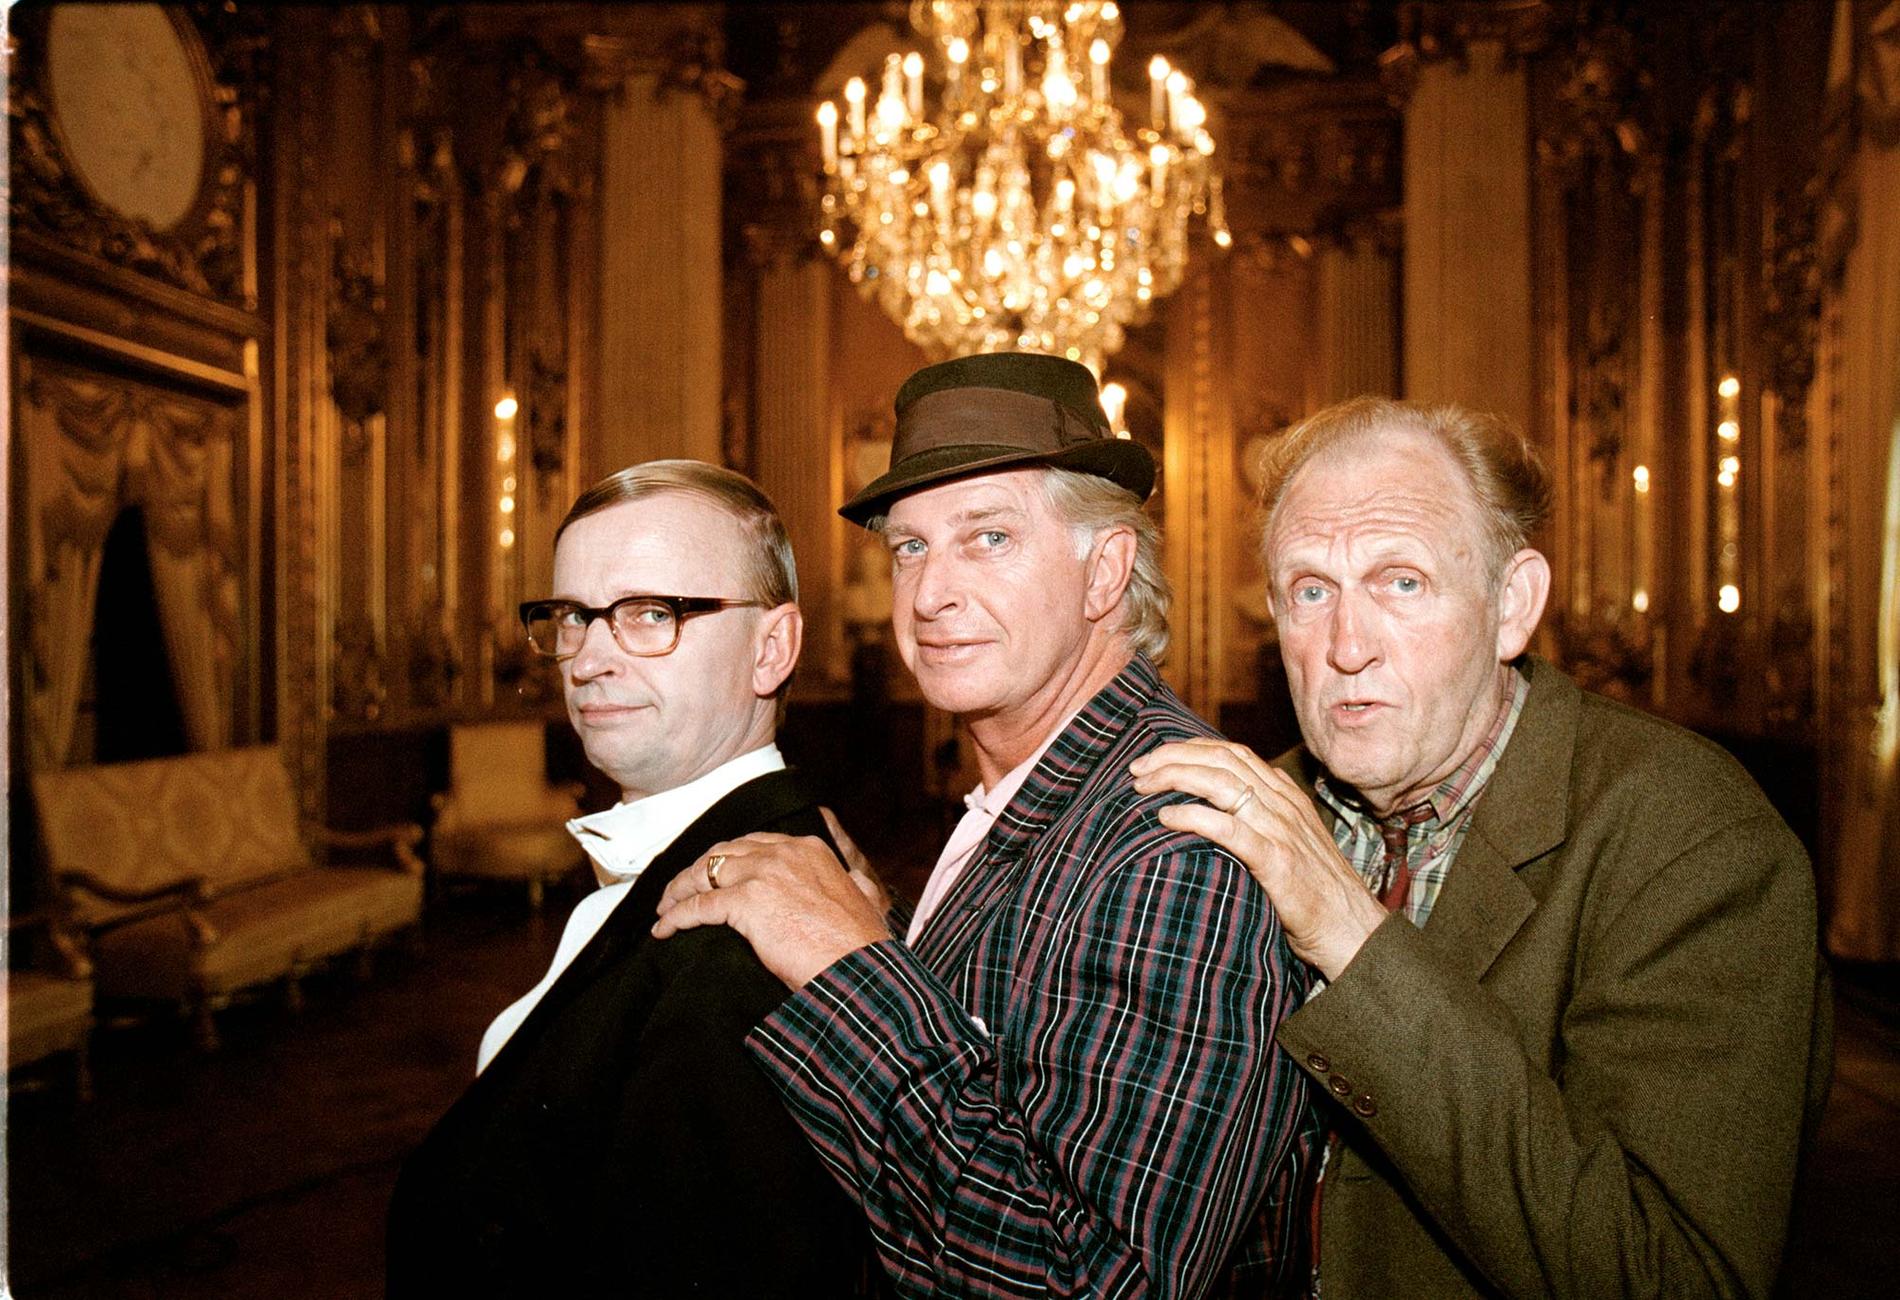 Johan Ulveson, Ulf Brunnberg och Björn Gustafson som Jönssonligan i filmen Jönssonligan spelar högt från 2000.